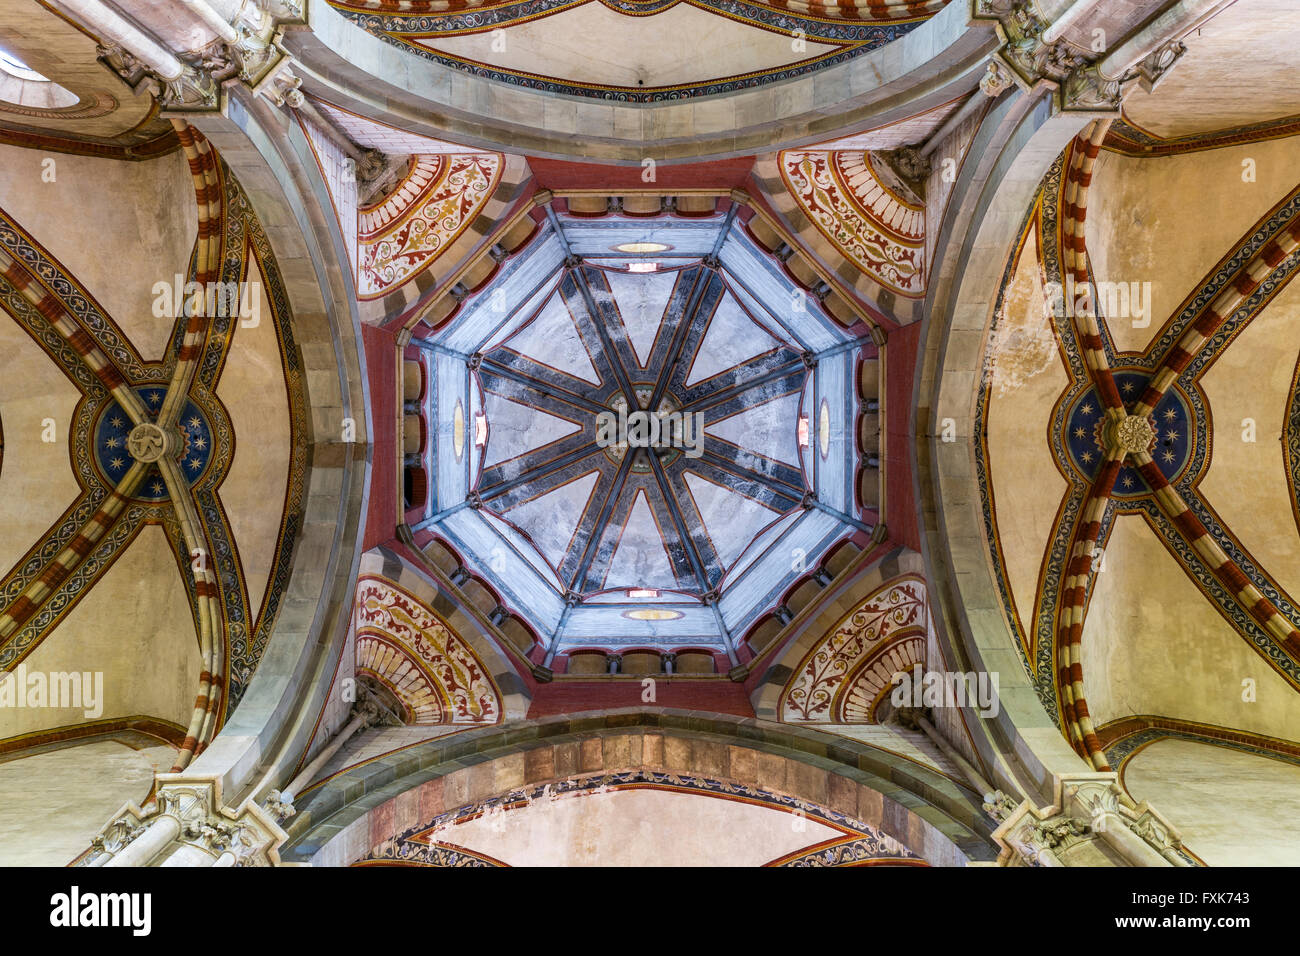 Incrocio con tholobate e cupola, St. Andrew's Basilica, Basilica di Sant'Andrea, architettura gotica, Vercelli Piemonte, Italia Foto Stock